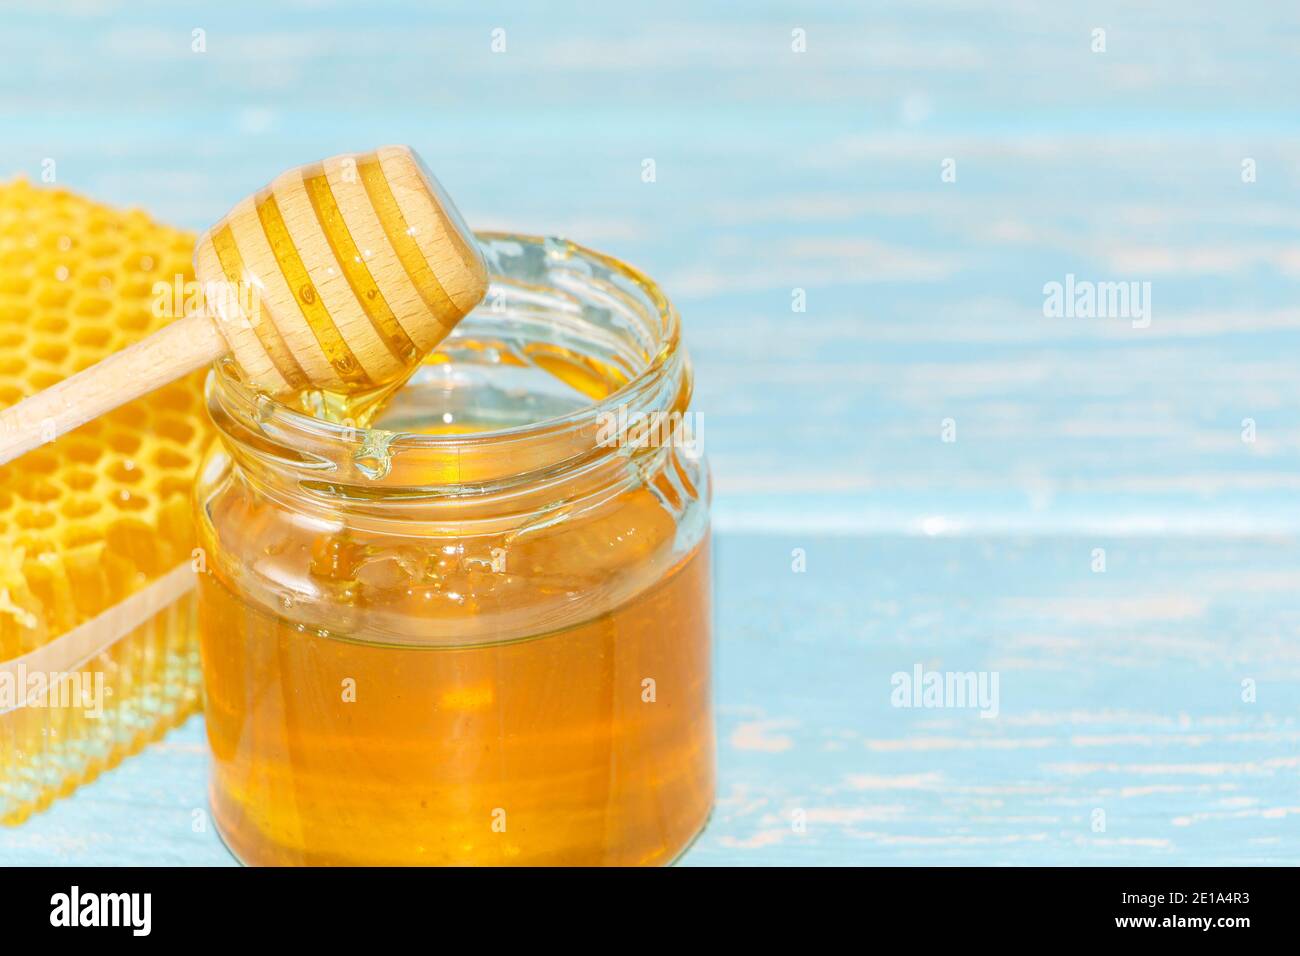 Miel en el fondo de panal. Miel en un tarro de vidrio y panal de